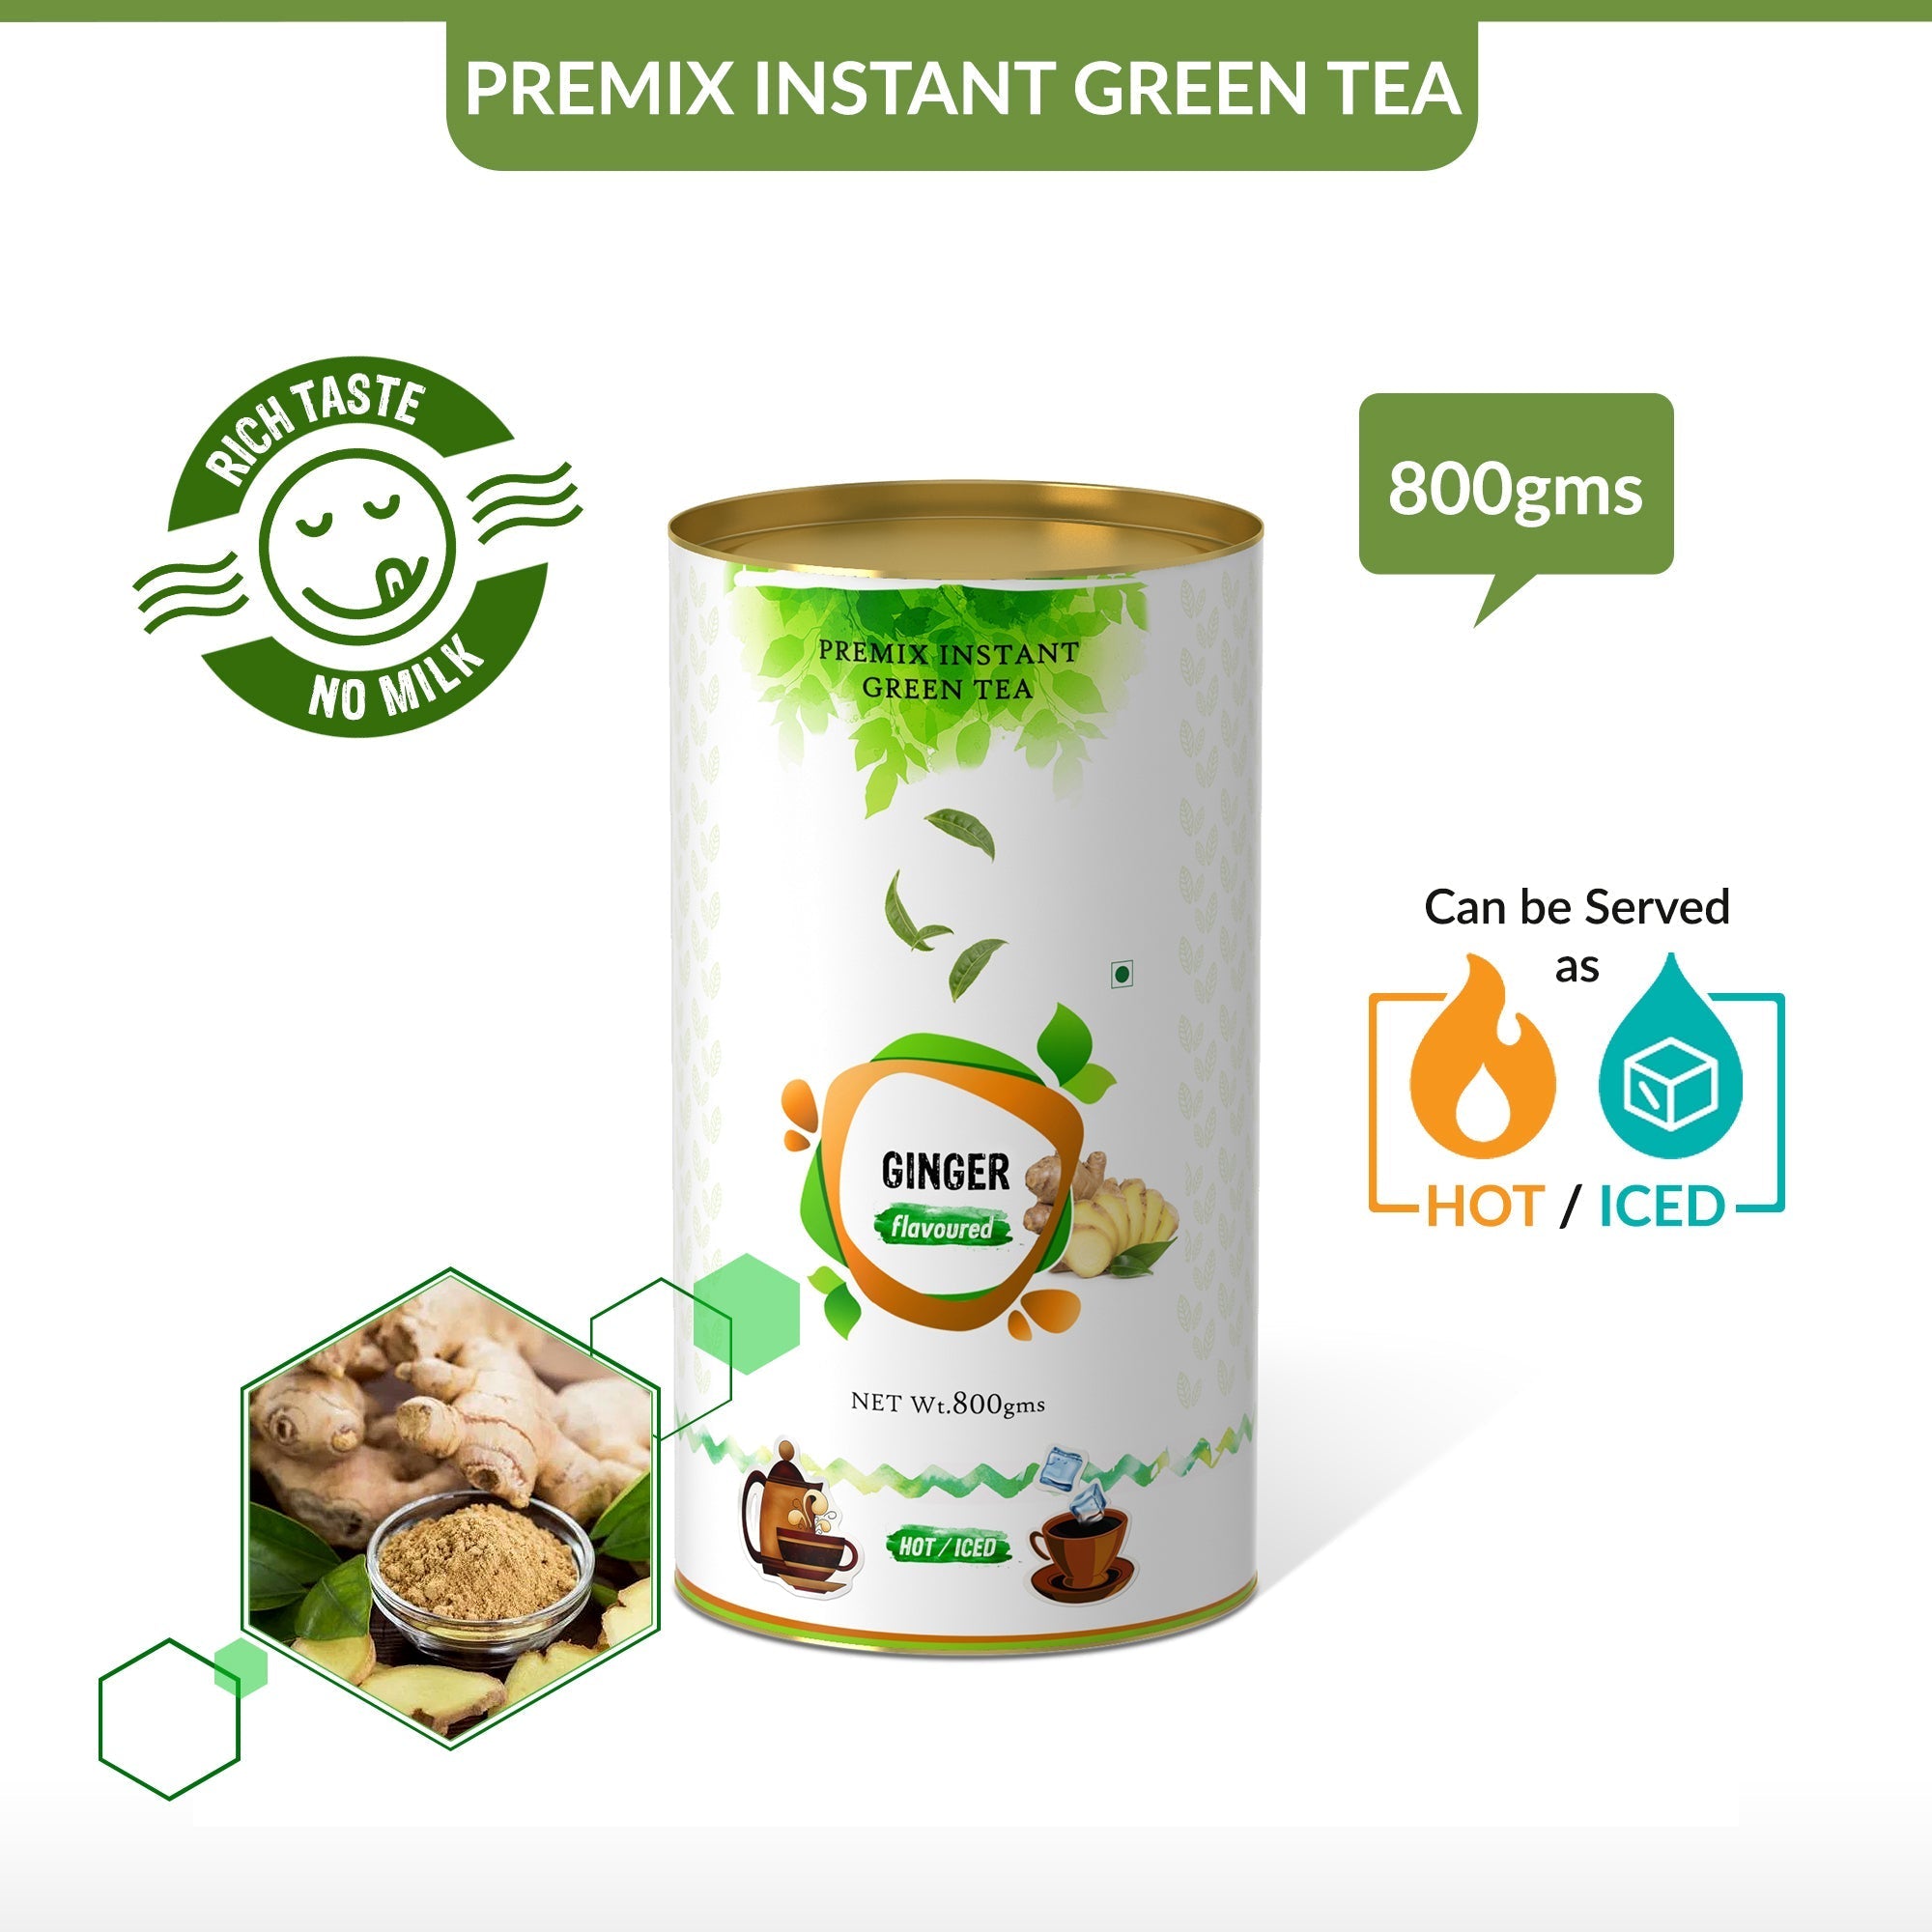 Ginger Flavored Instant Green Tea - 800 gms